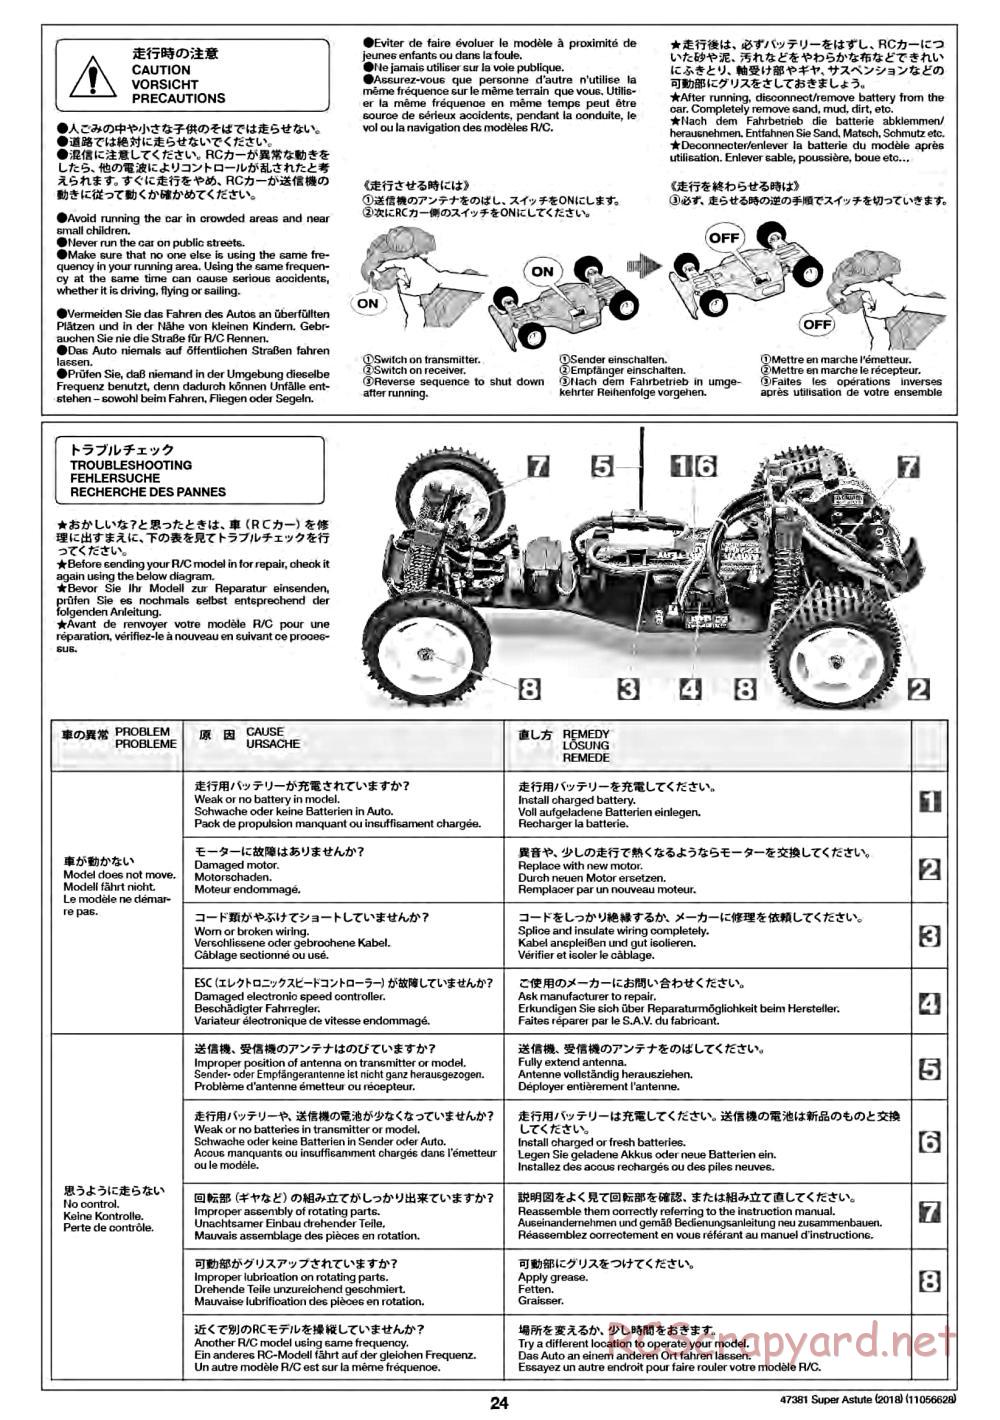 Tamiya - Super Astute (2018) Chassis - Manual - Page 24